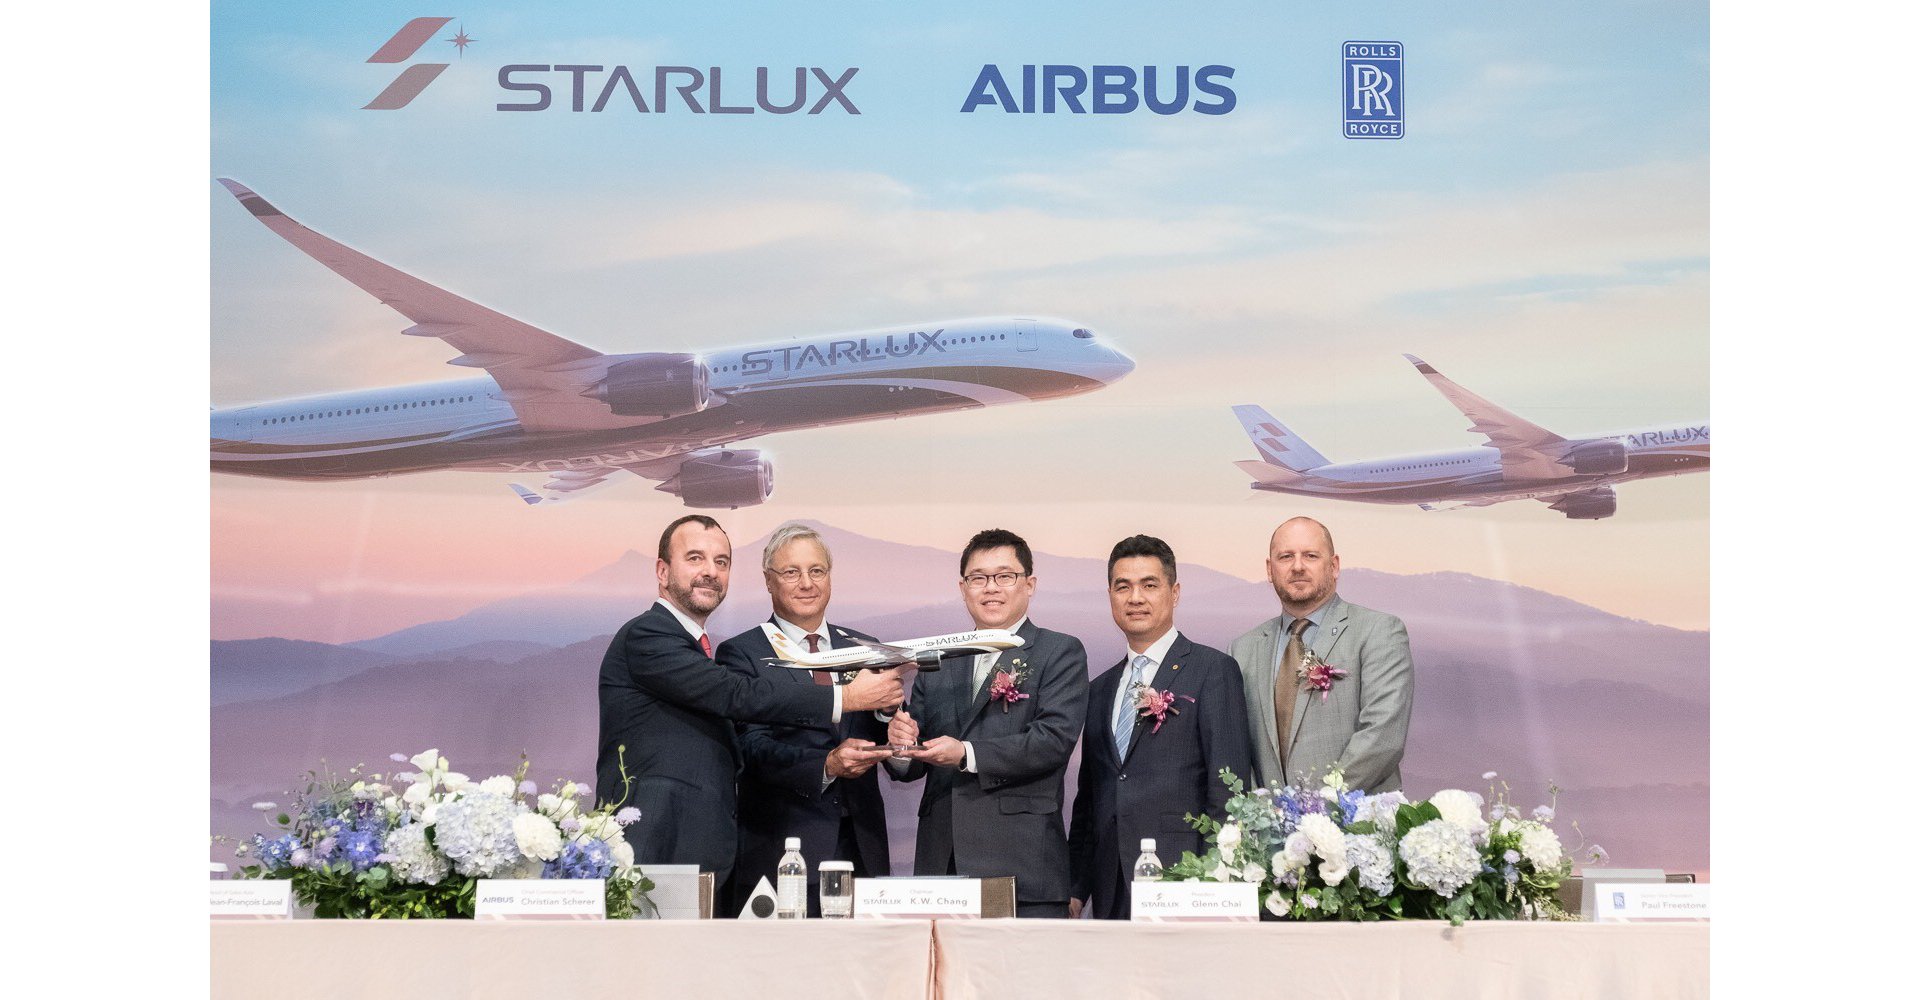 Resultado de imagen para Starlux airlines